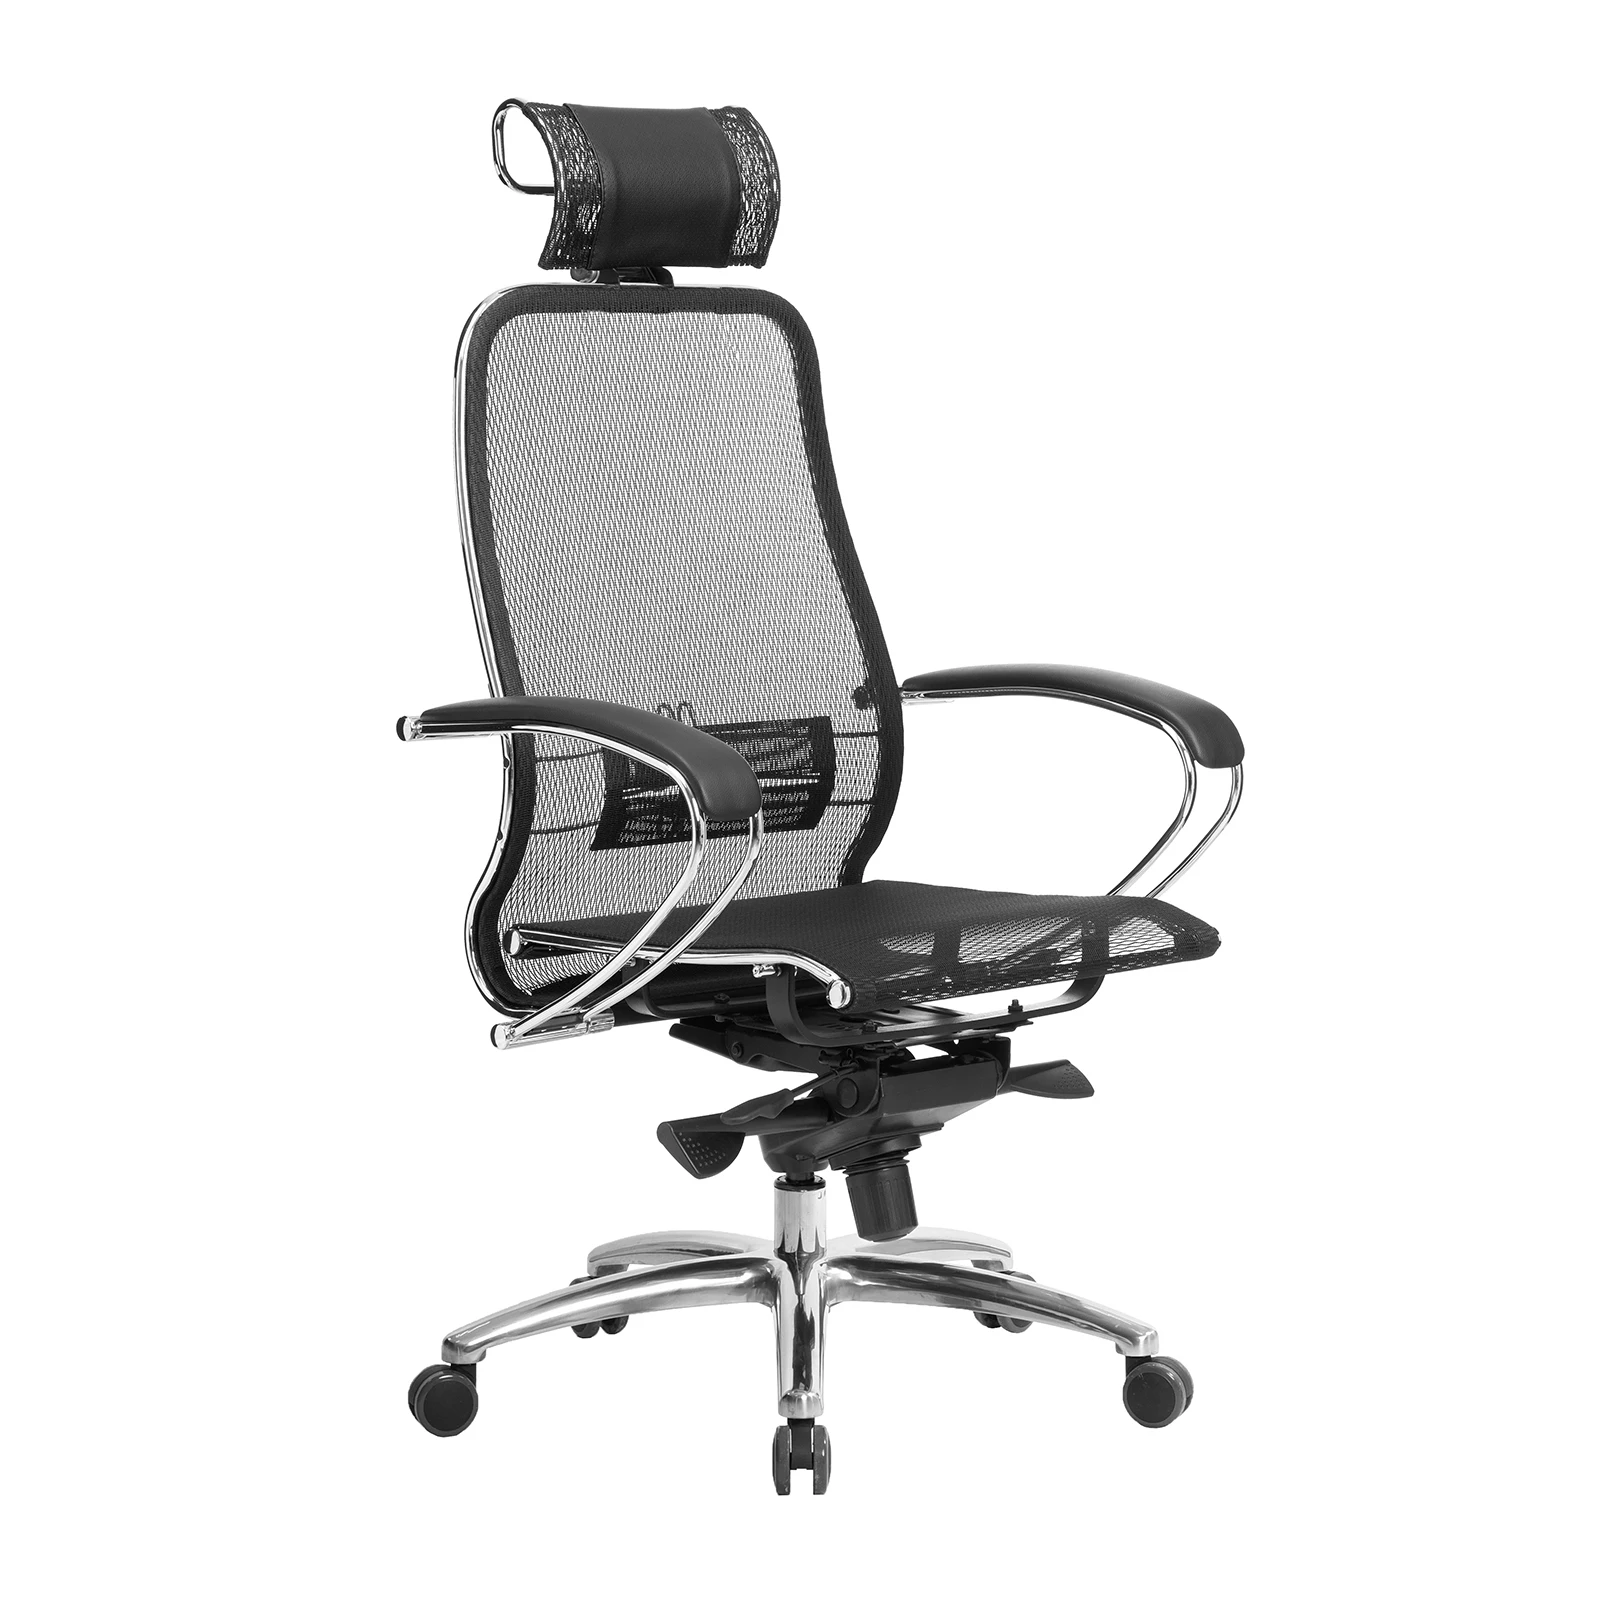 Офисное компьютерное кресло SAMURAI S-2.04. Так же для геймеров и руководителей | Мебель